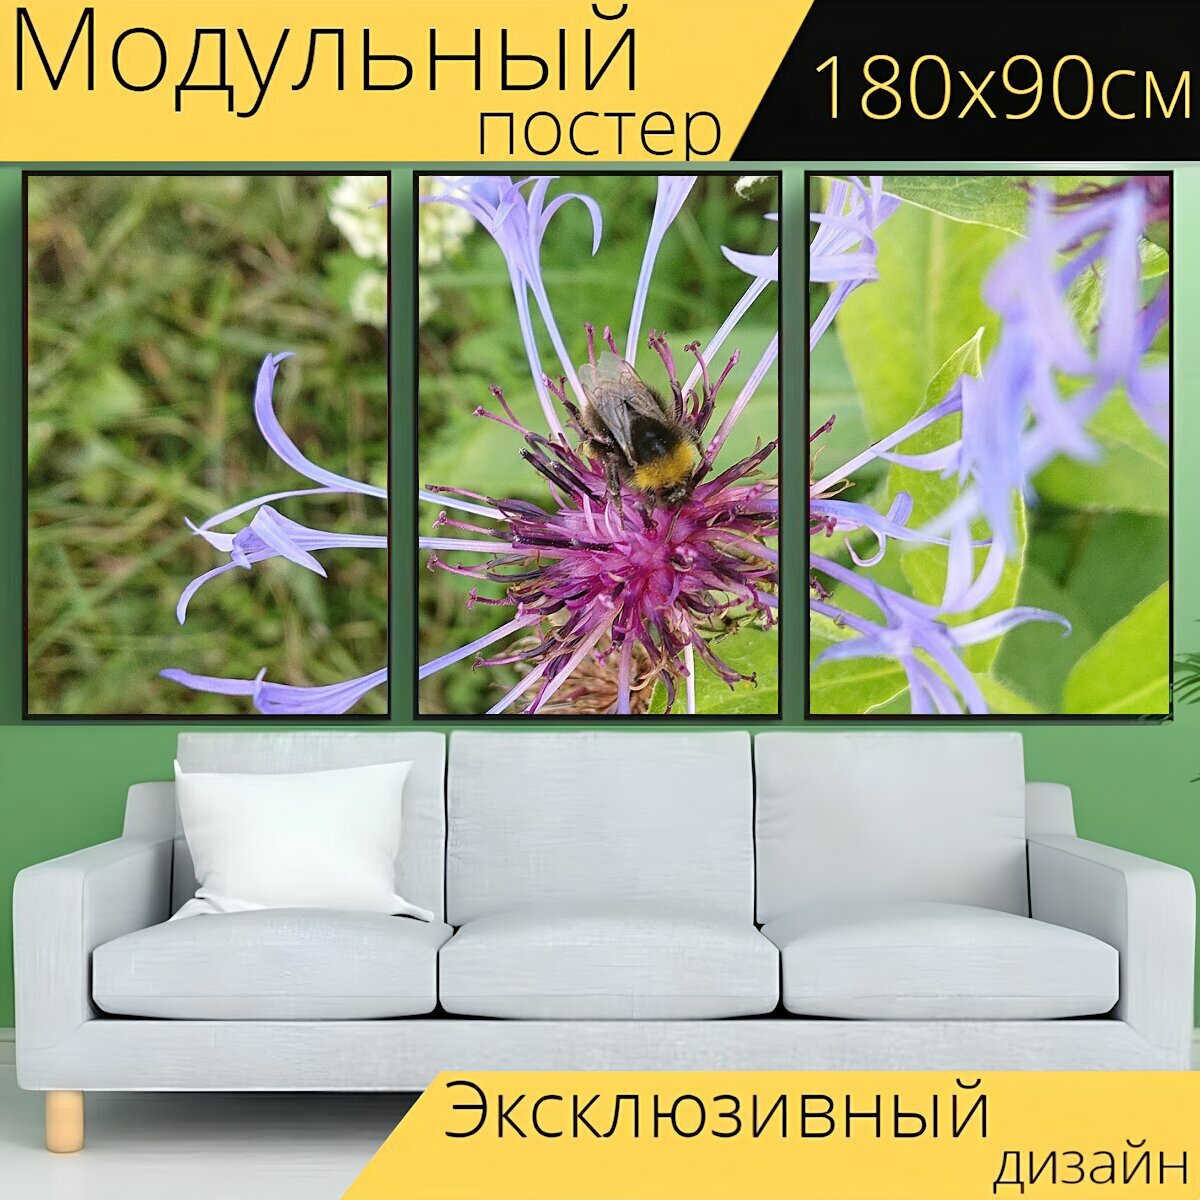 Модульный постер "Пчела, шмель, цветок" 180 x 90 см. для интерьера